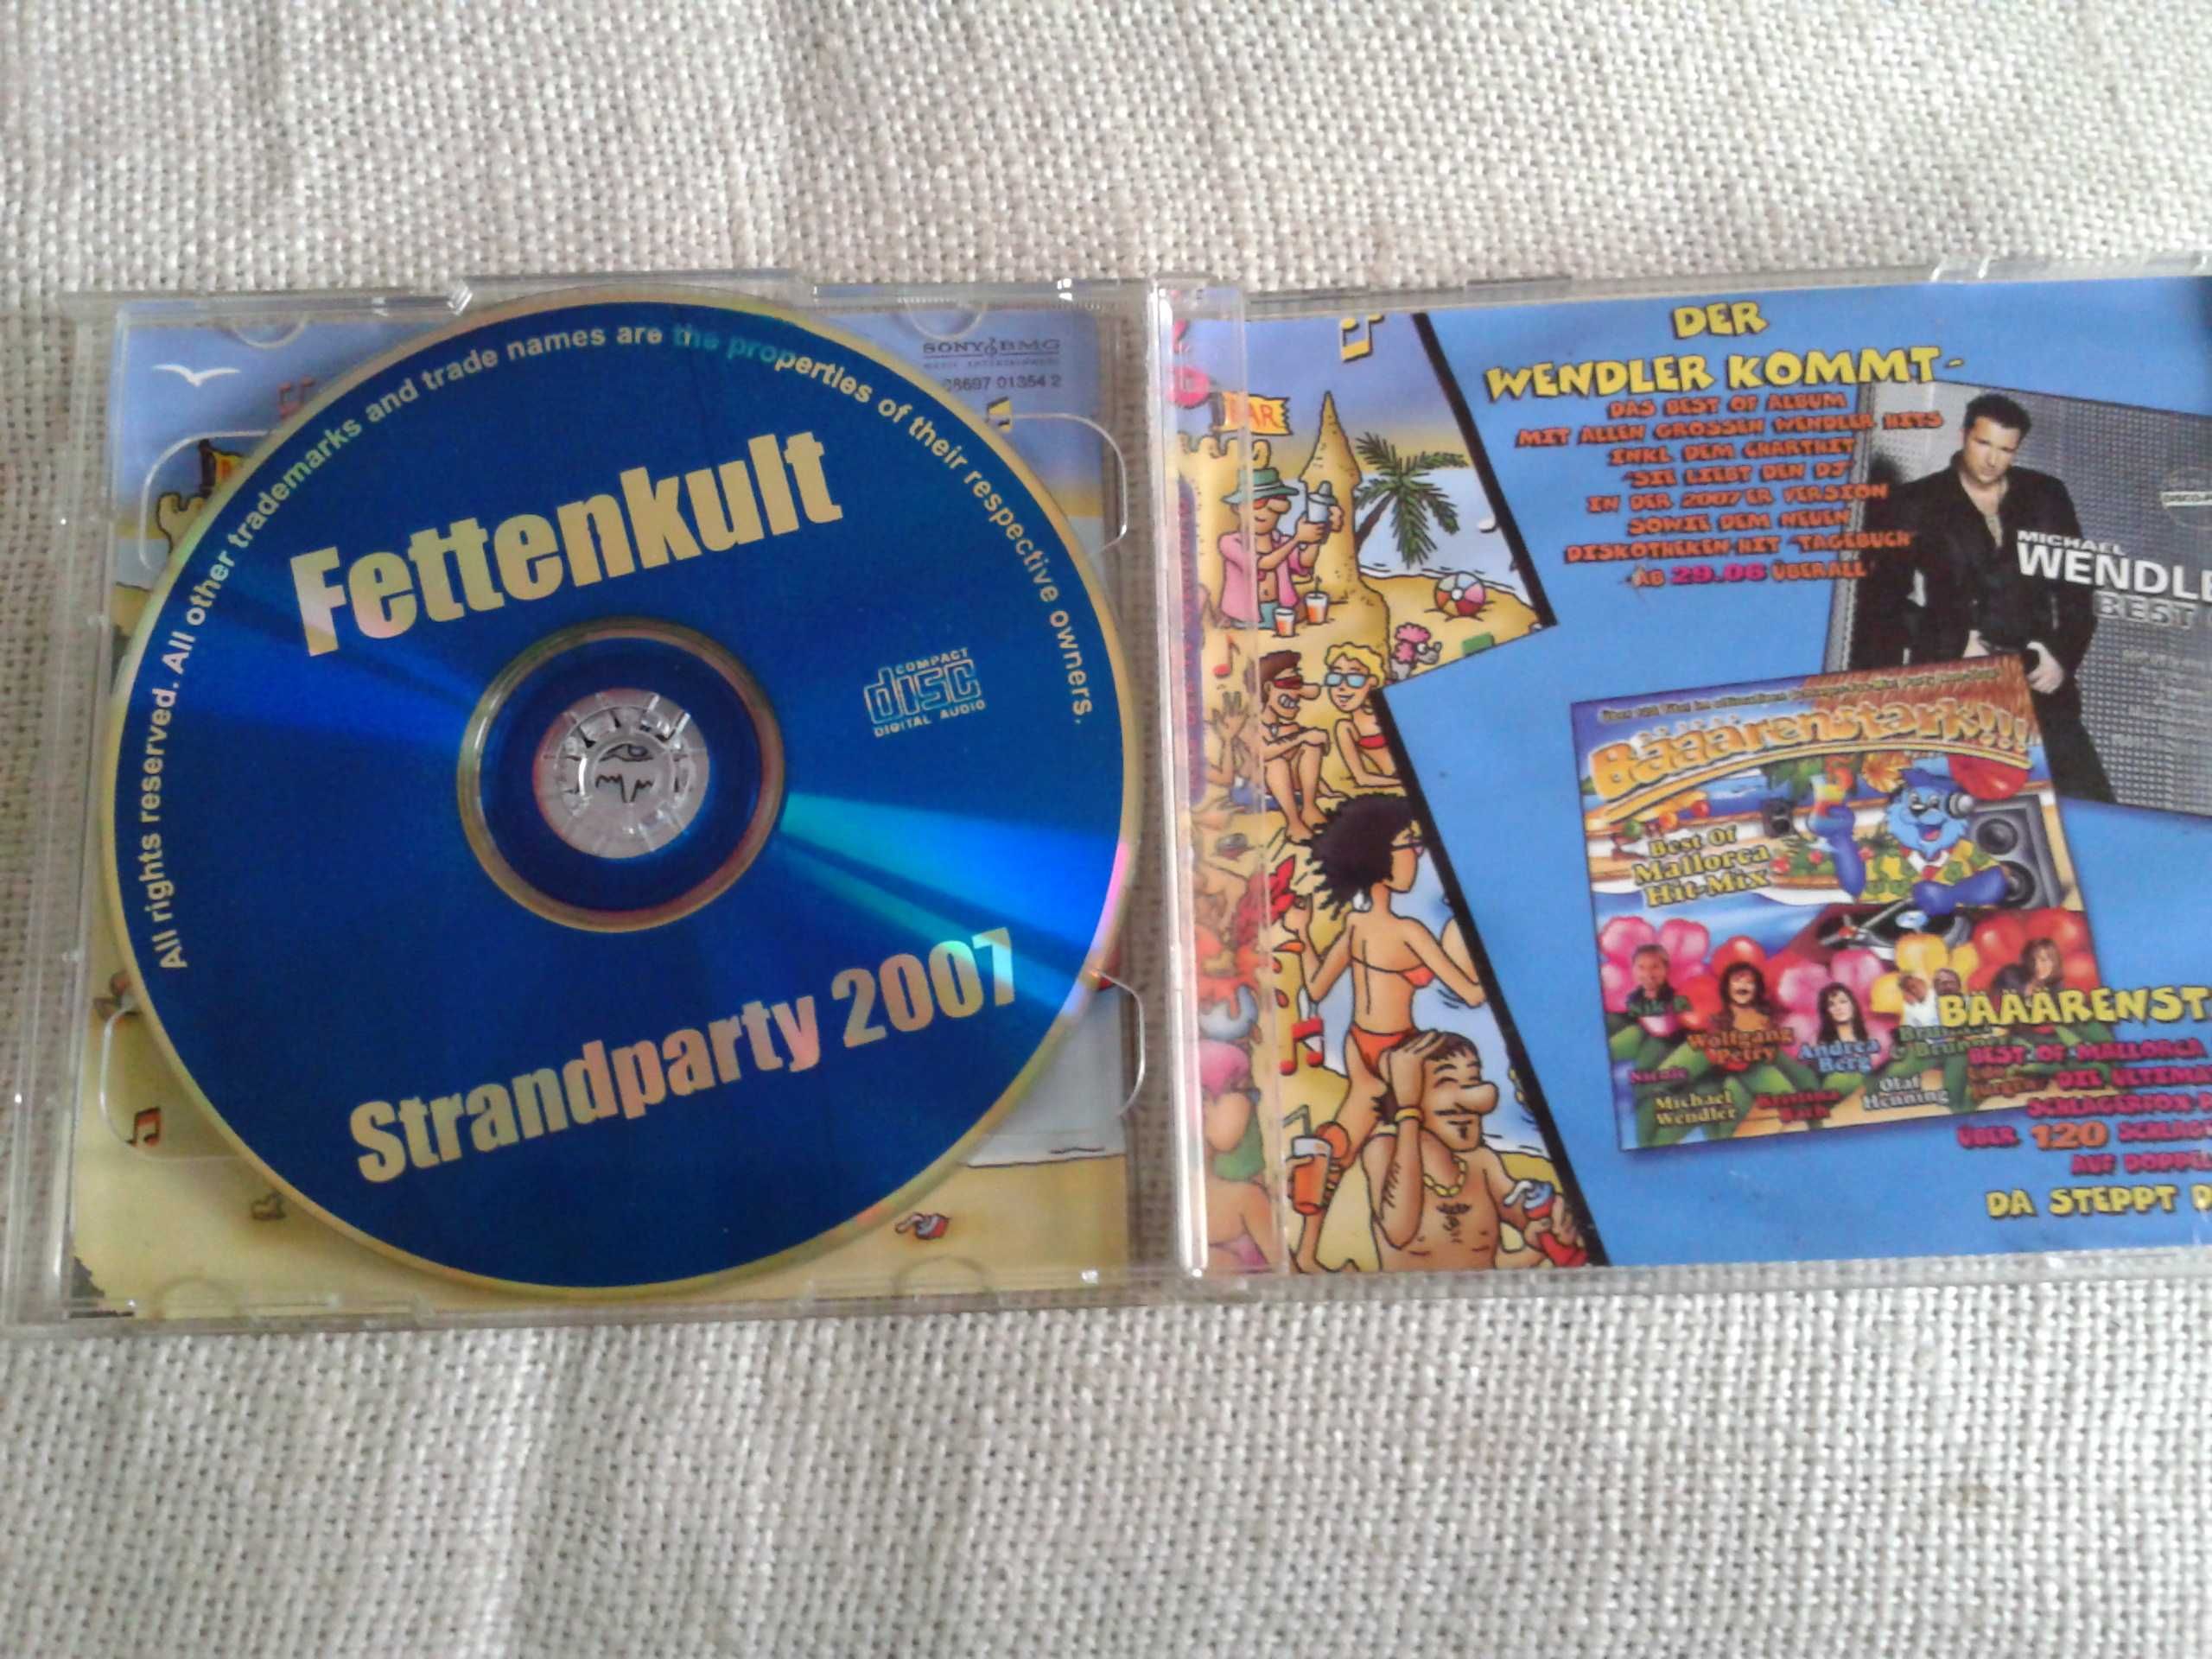 Fetenkult, Strandparty 2007  CD